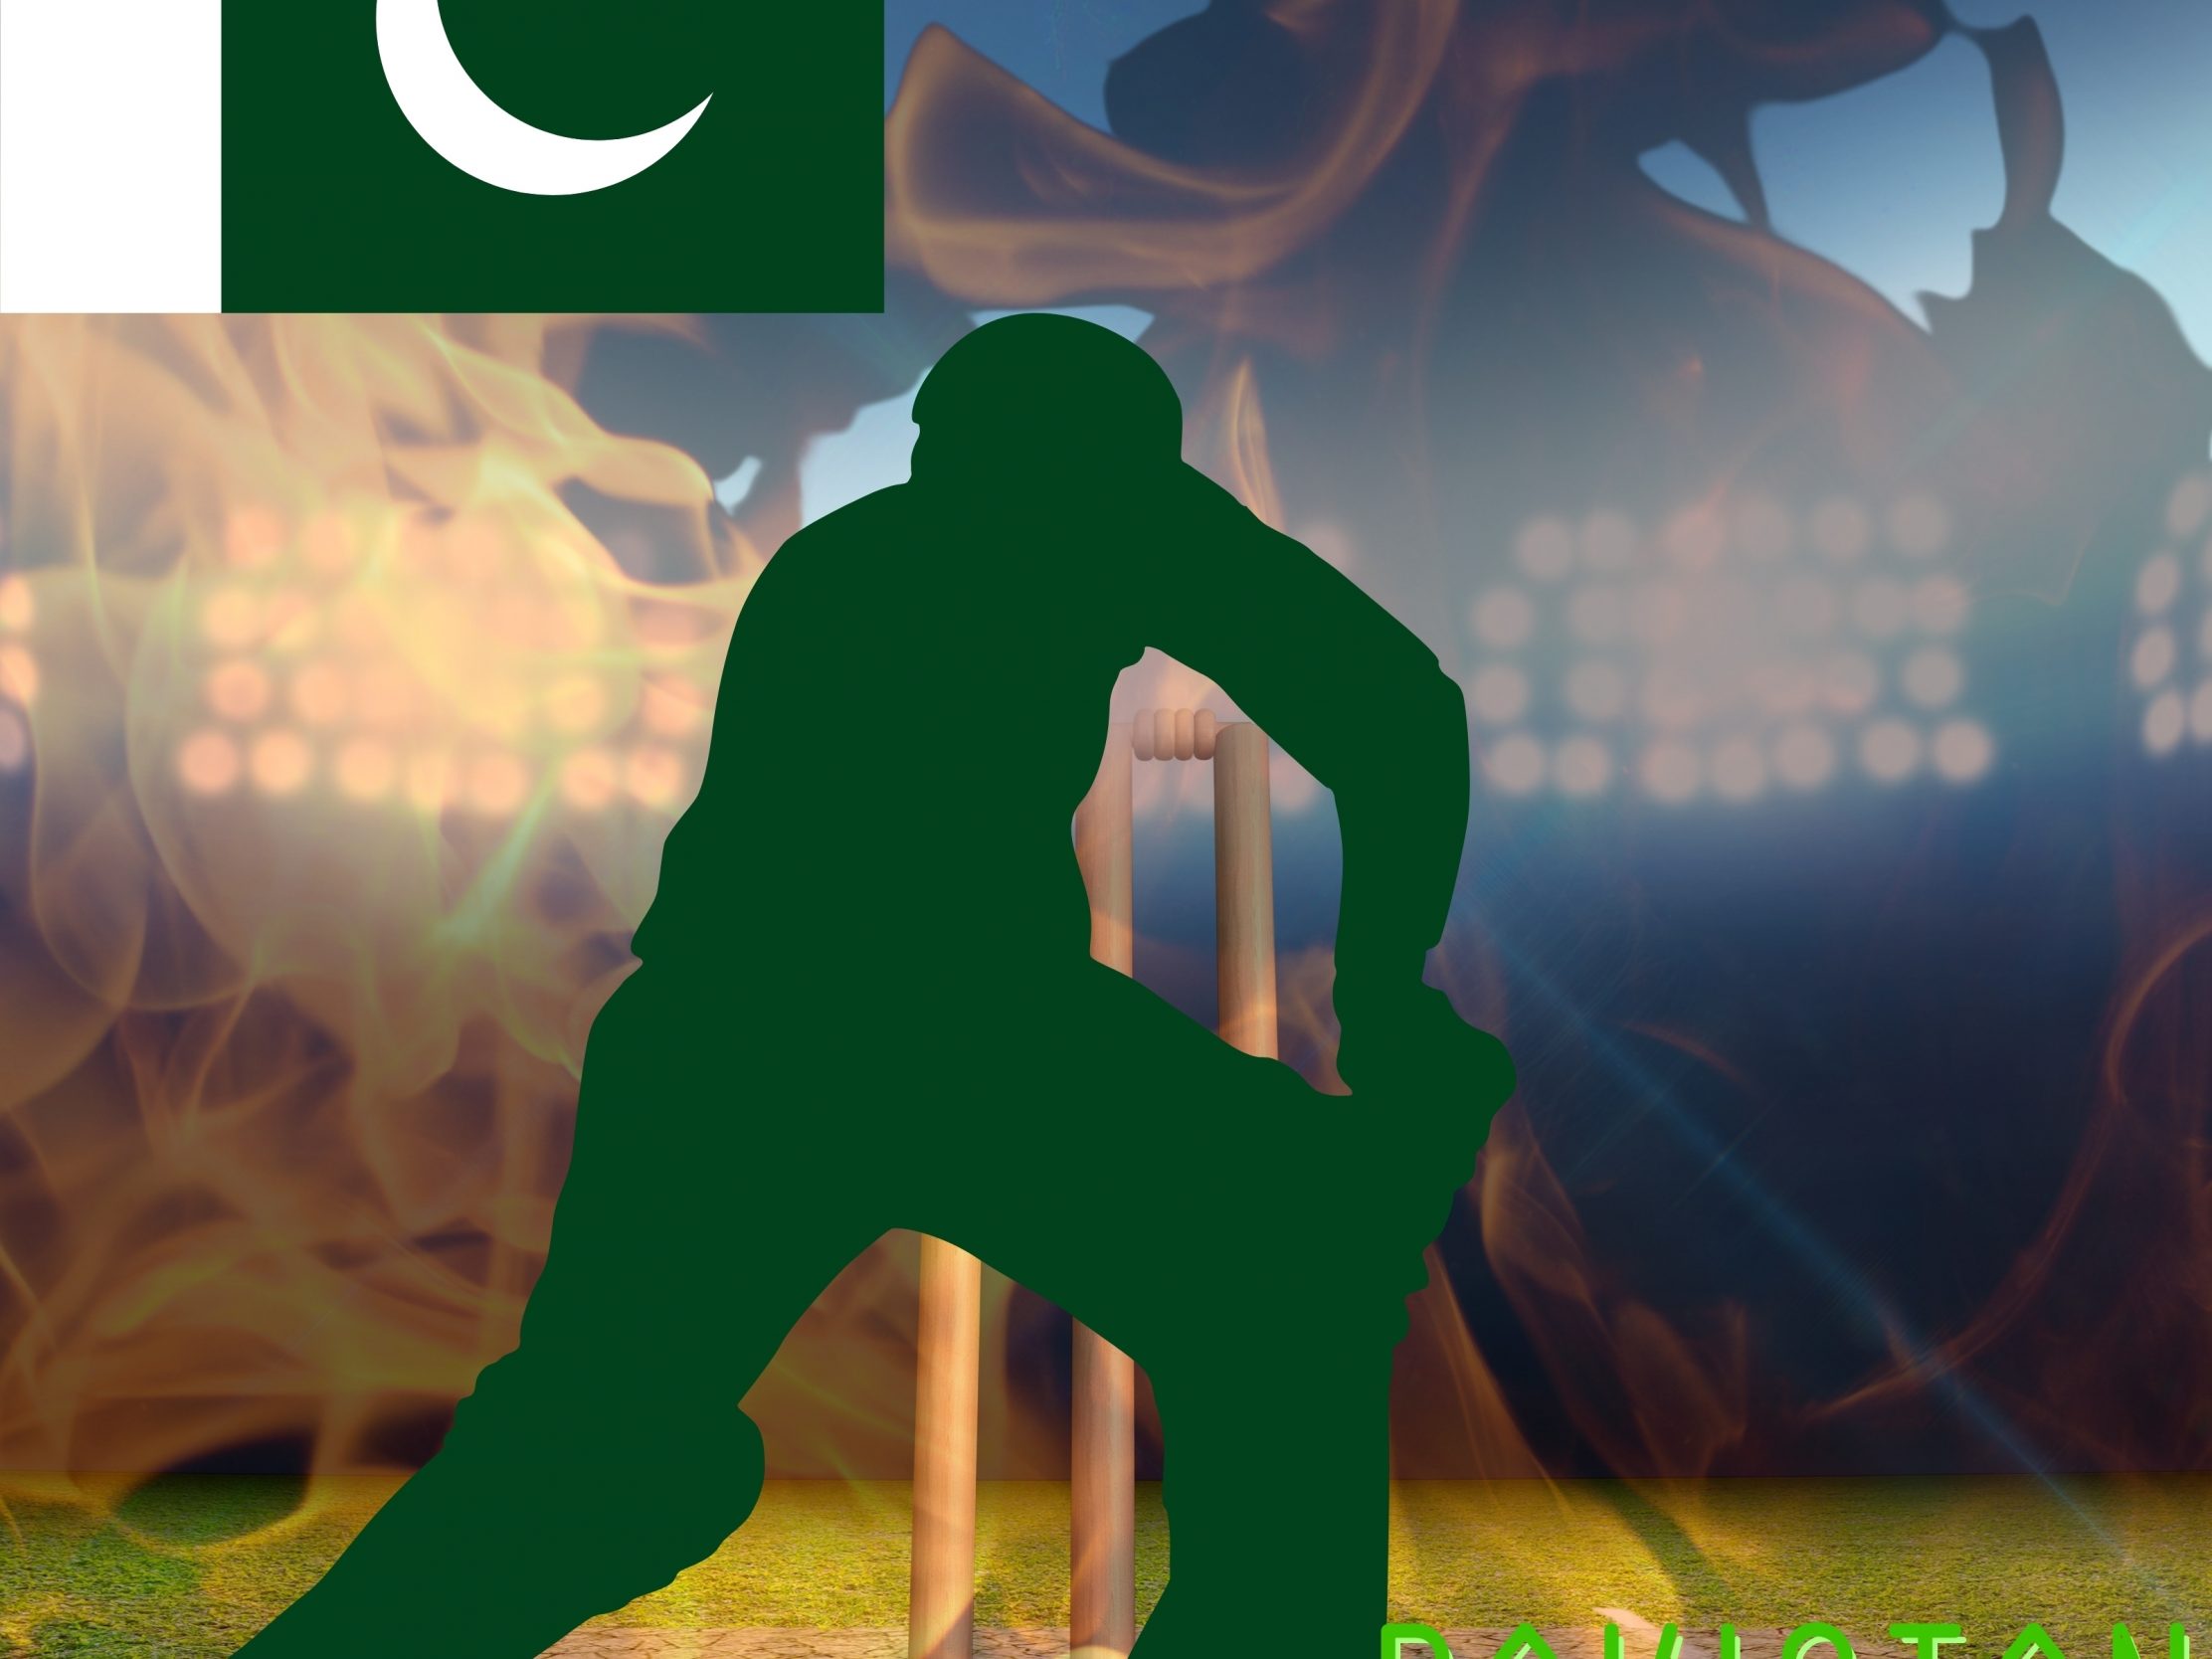 2224x1668 iPad Pro wallpapers Pakistan Cricket Stadium iPad Wallpaper 2224x1668 pixels resolution